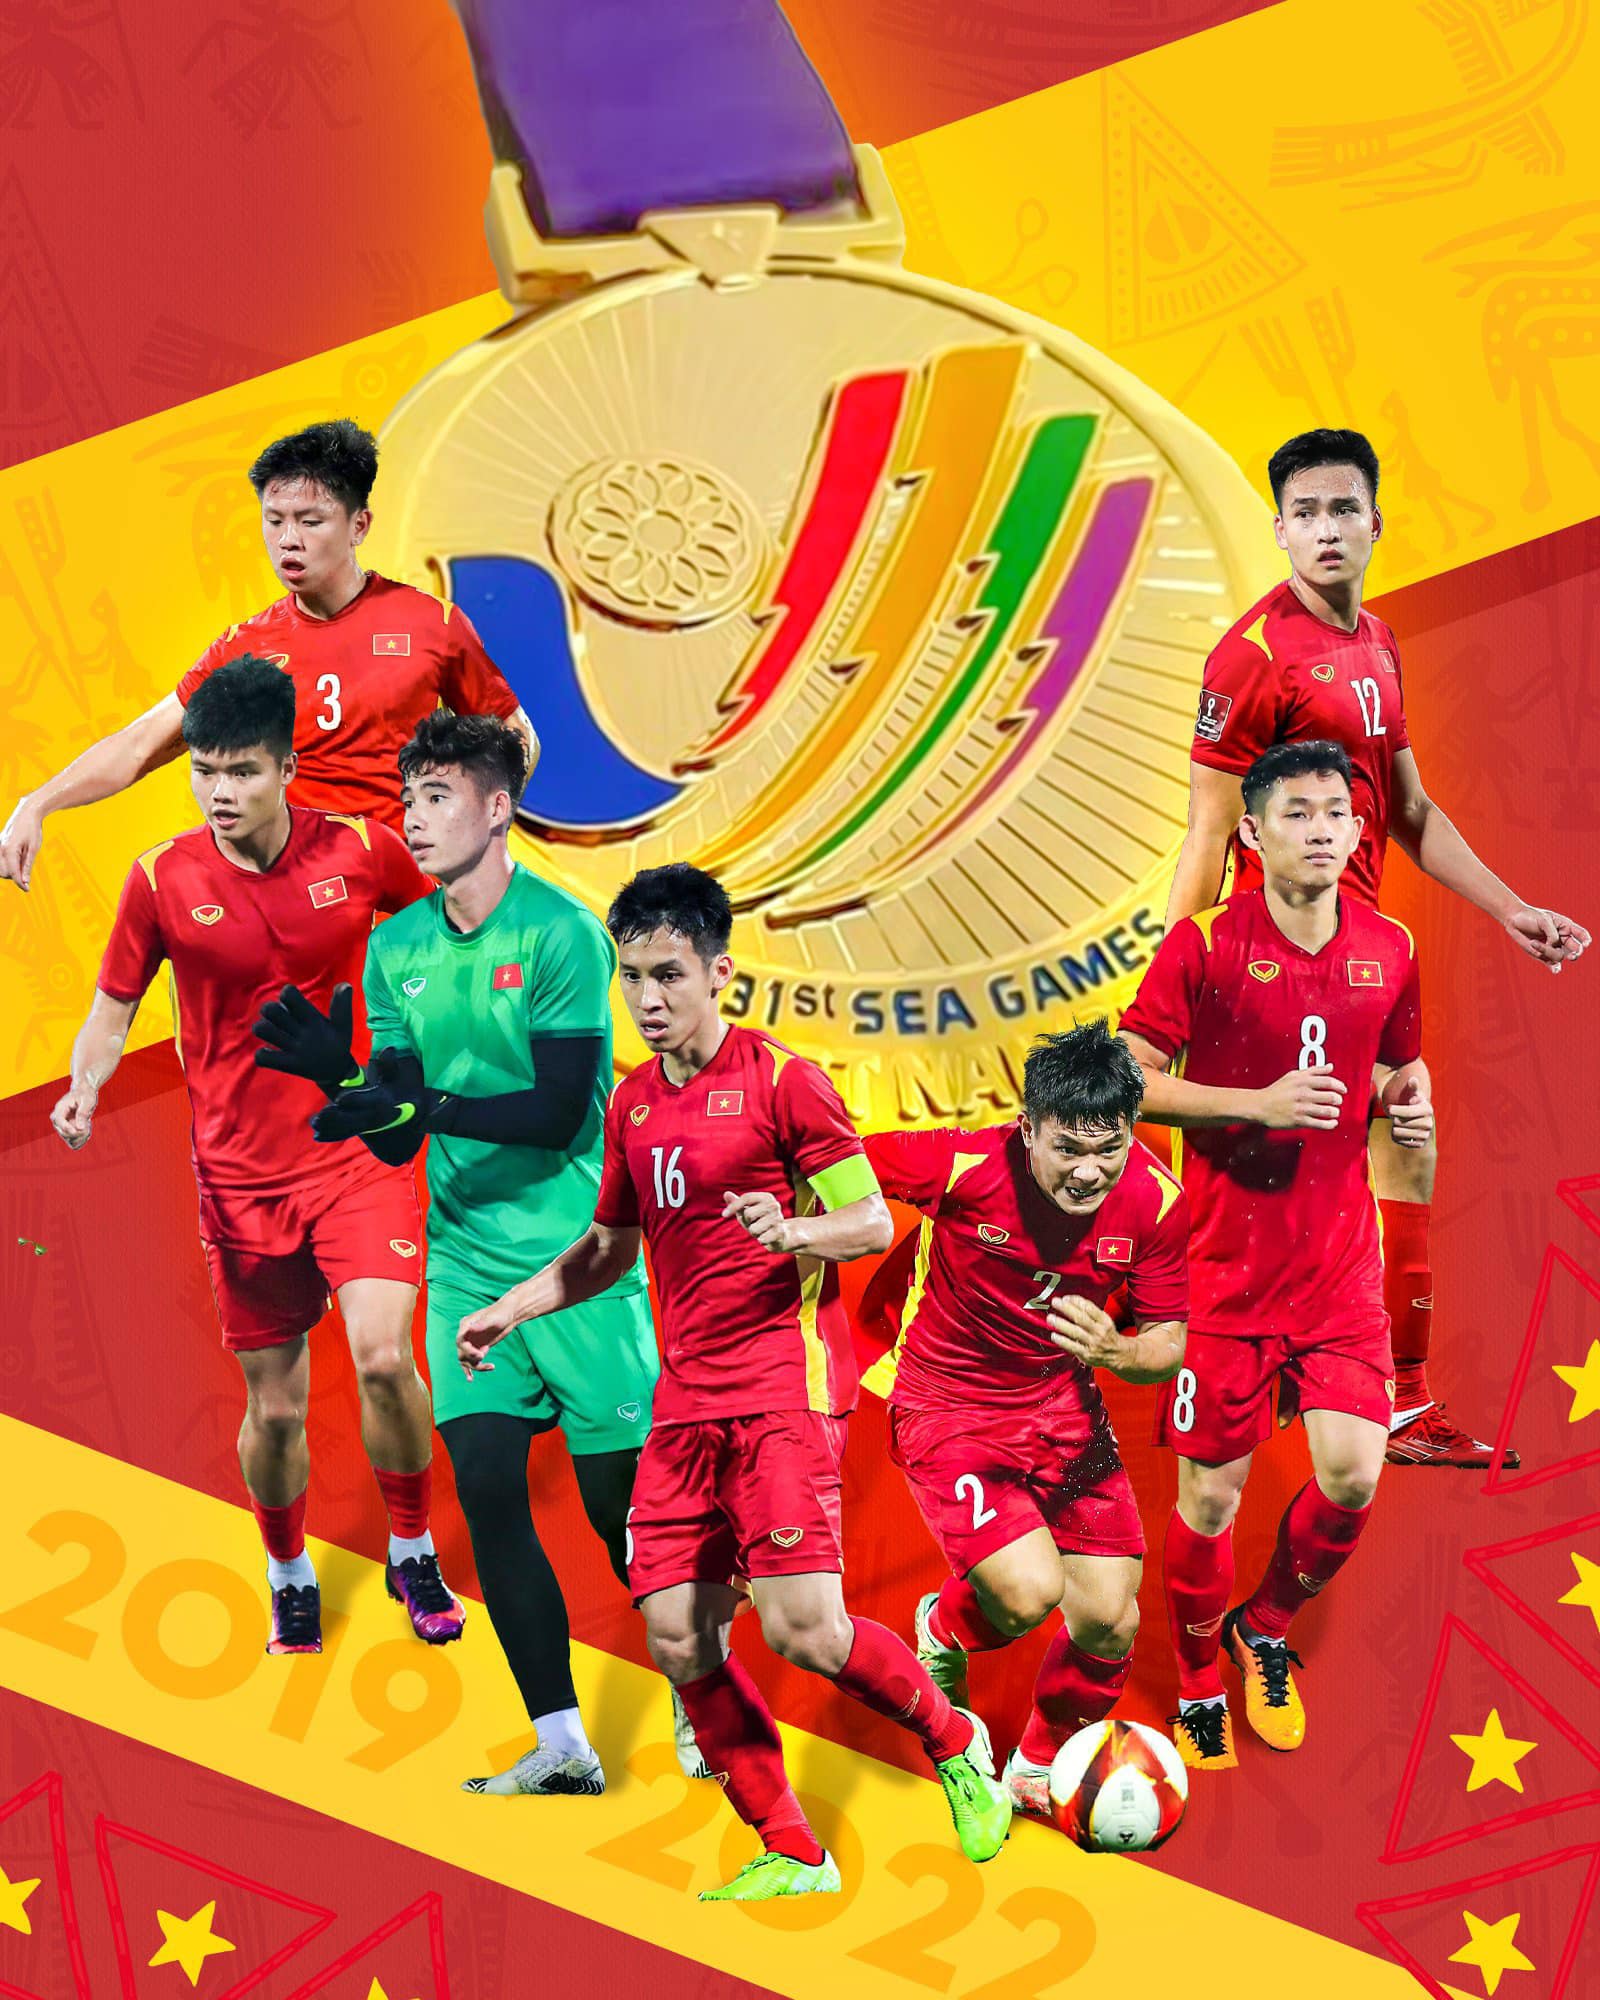 Những hình ảnh U23 Việt Nam khắc vào tim người hâm mộ bóng đá nước nhà   Báo Dân trí